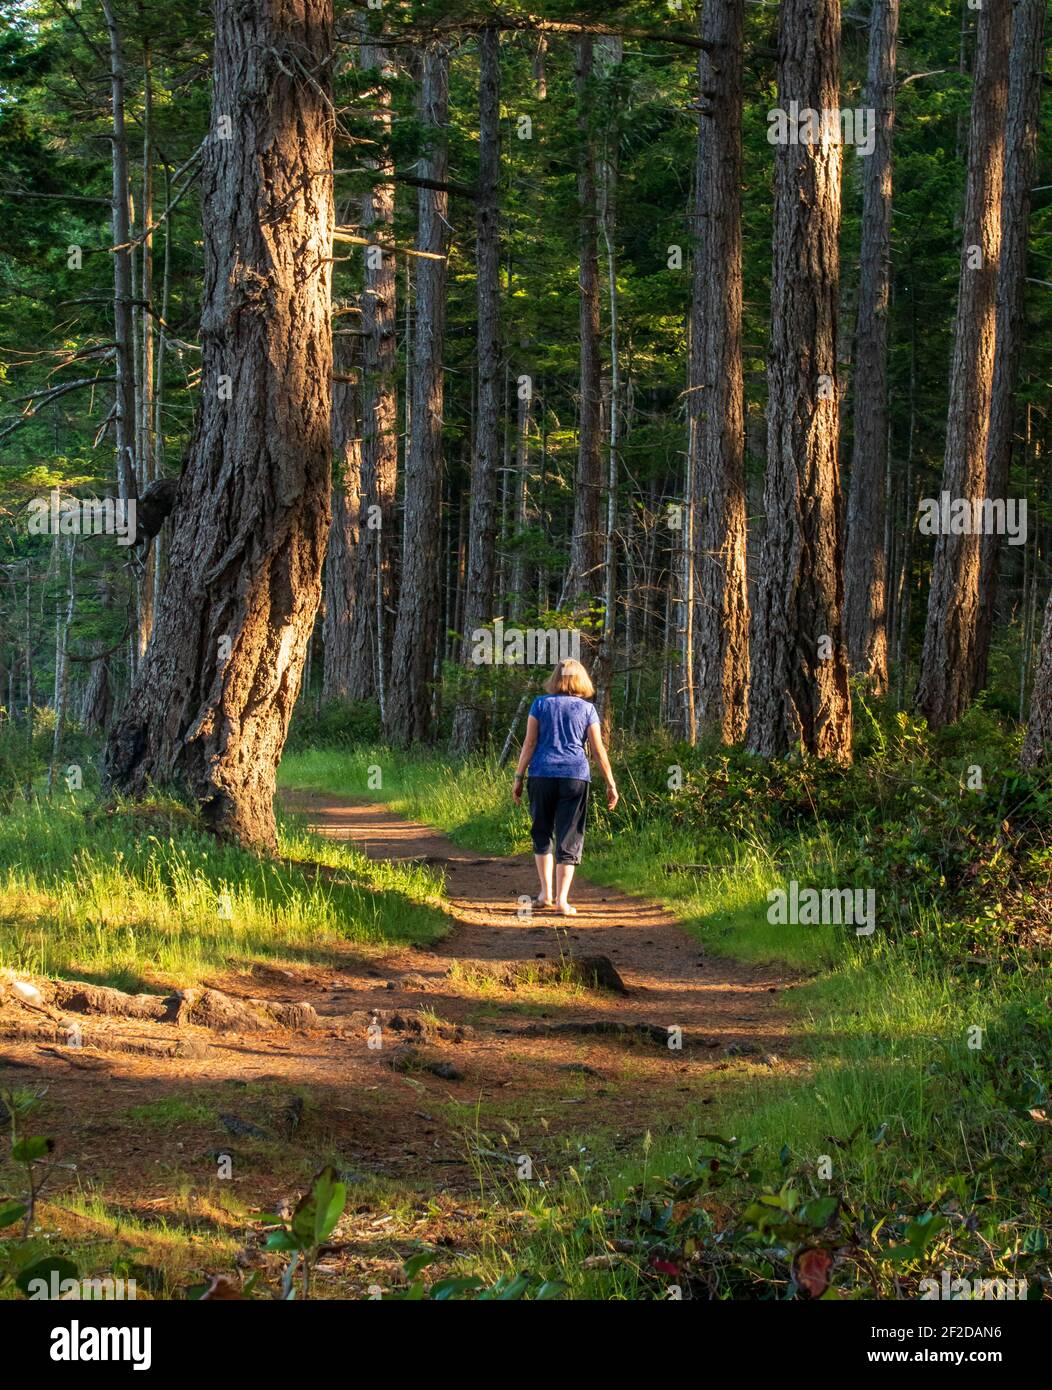 Femme en chemise violette marchant le long d'un chemin boisé. Grands arbres, soleil, herbe et ombres, scène forestière. Banque D'Images